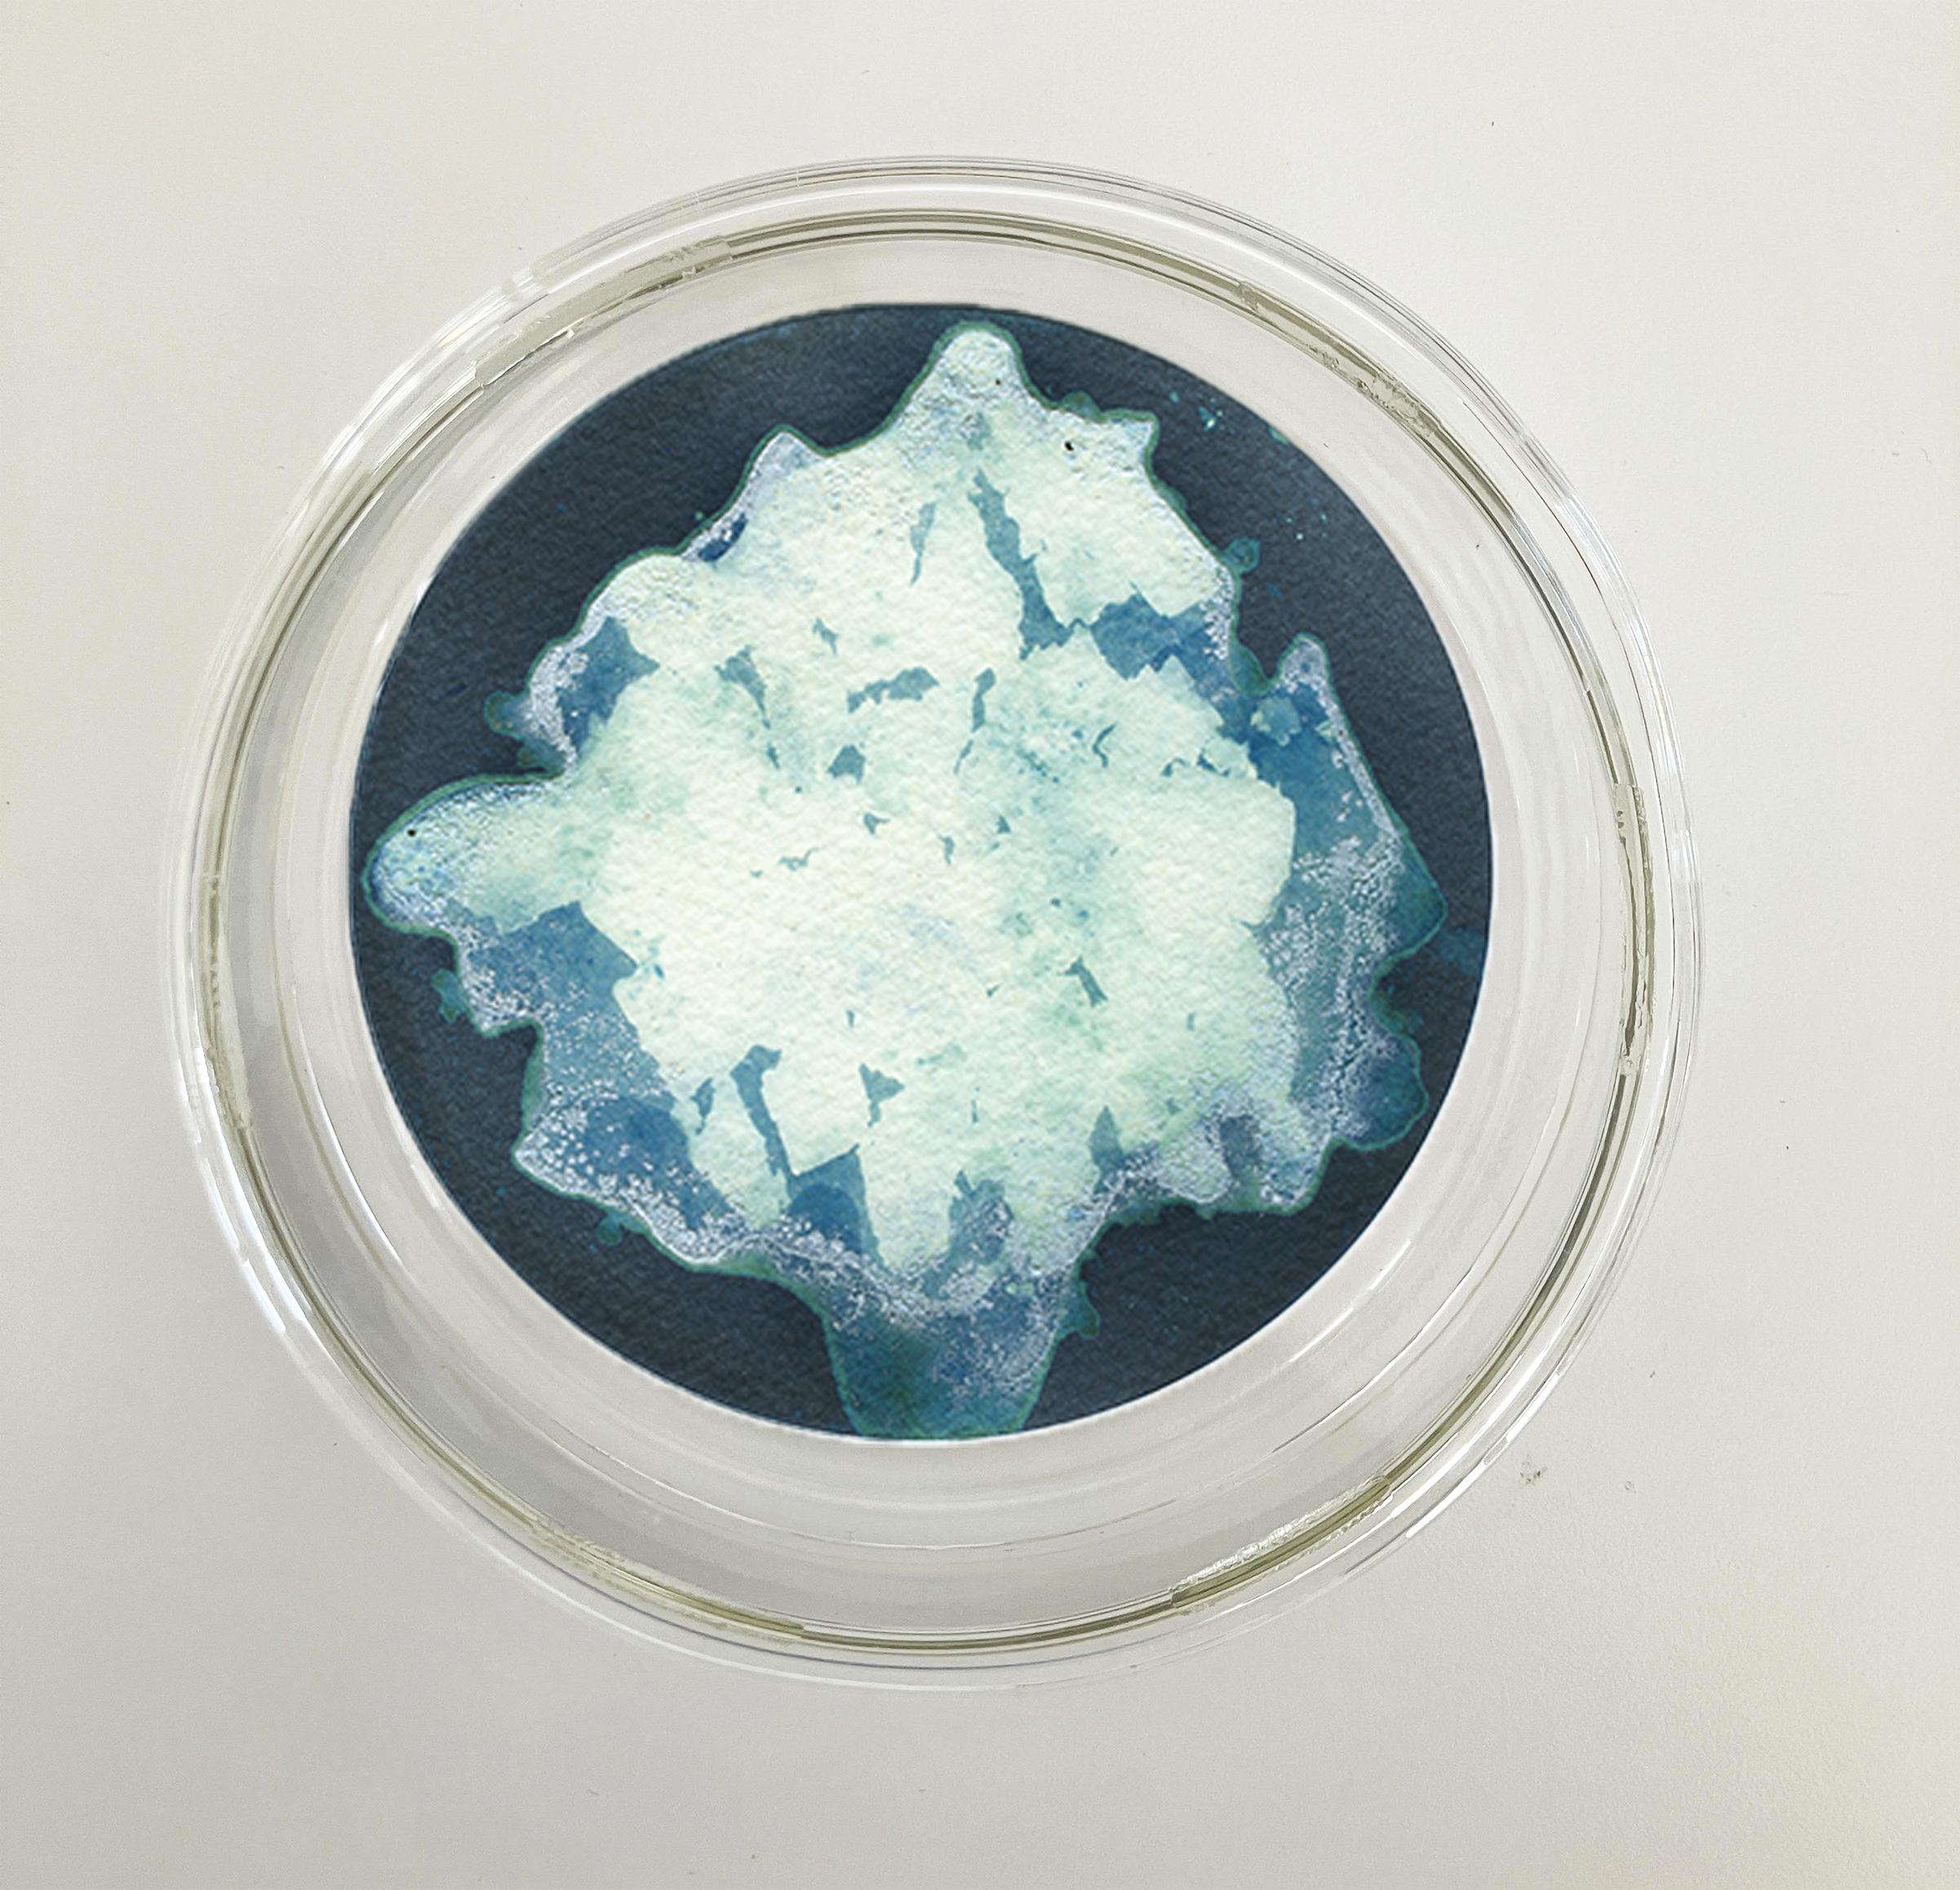 22, 23 und 24. Cyanotypie-Fotografien, montiert in einer hochfesten Glasschale (Grau), Still-Life Sculpture, von Paola Davila